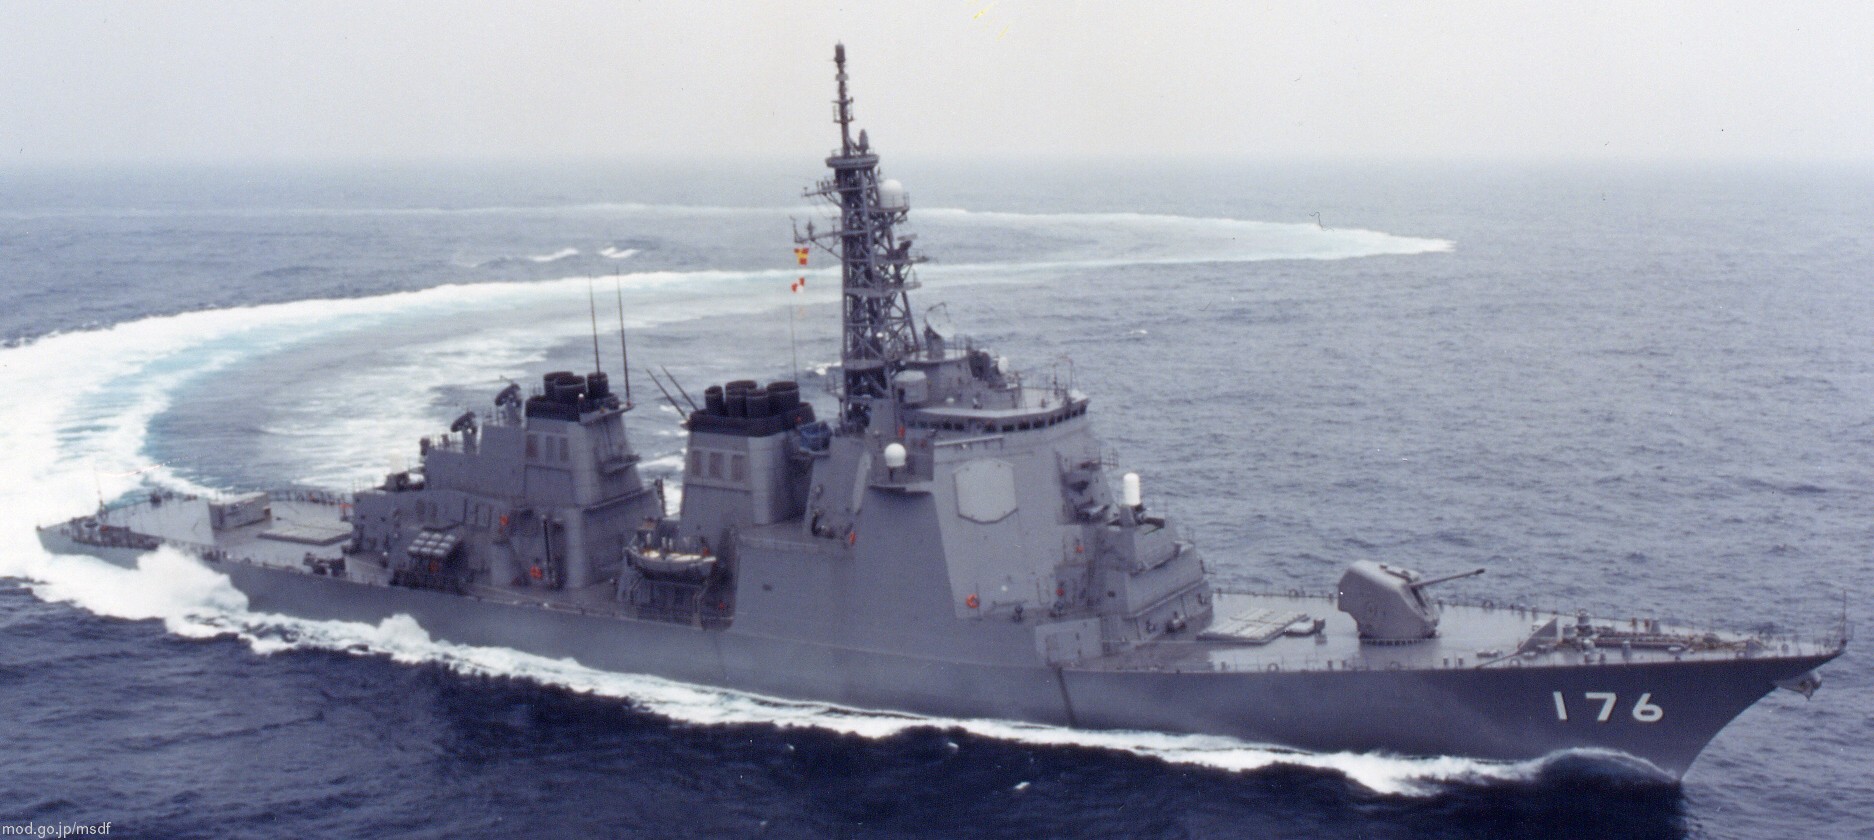 ddg-176 jds chokai kongou class destroyer japan maritime self defense force jmsdf 06